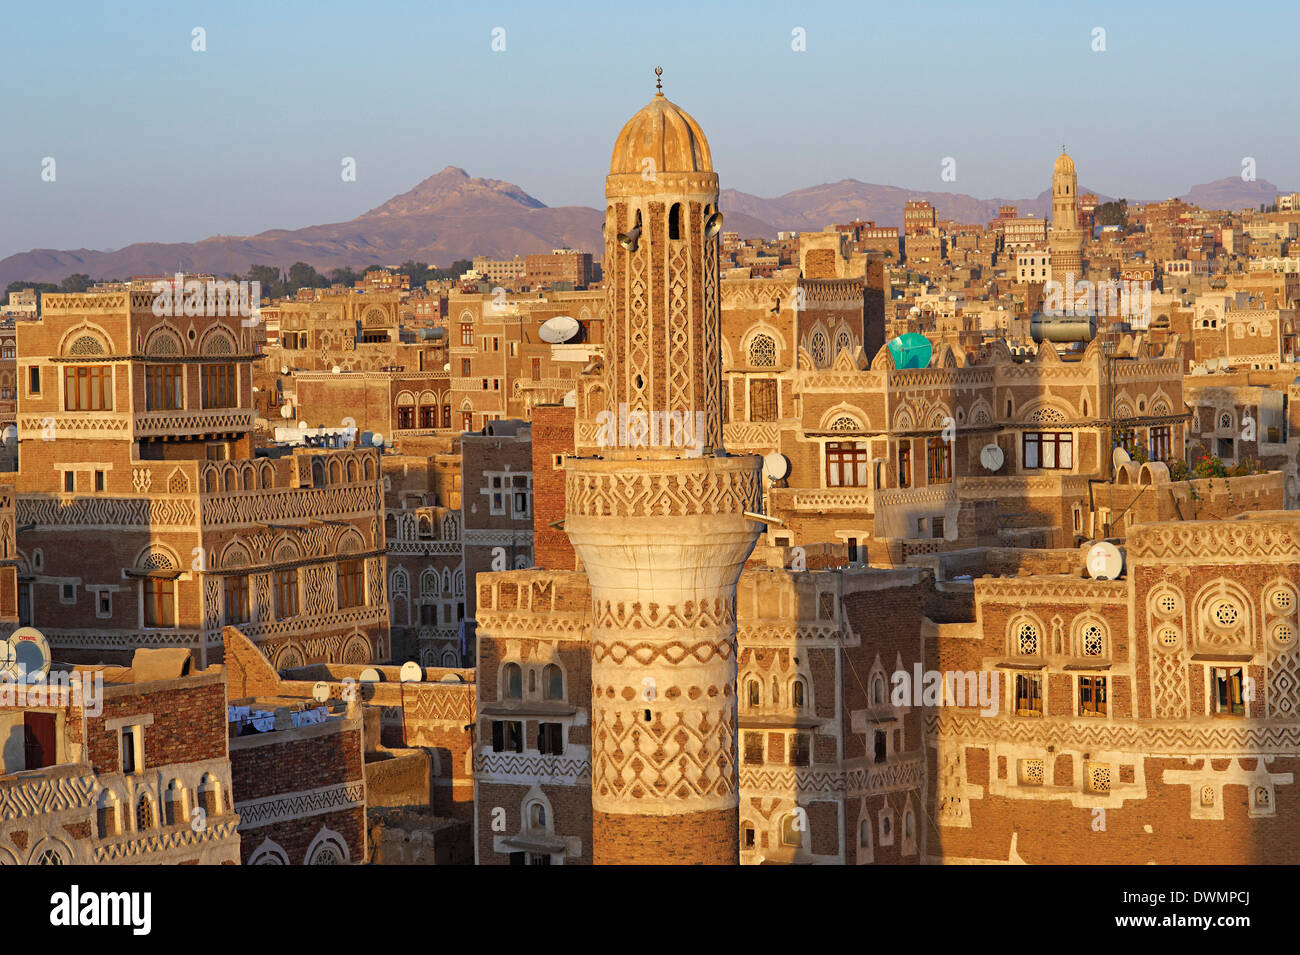 Portrait de la vieille ville de Sanaa, Site du patrimoine mondial de l'UNESCO, au Yémen, au Moyen-Orient Banque D'Images